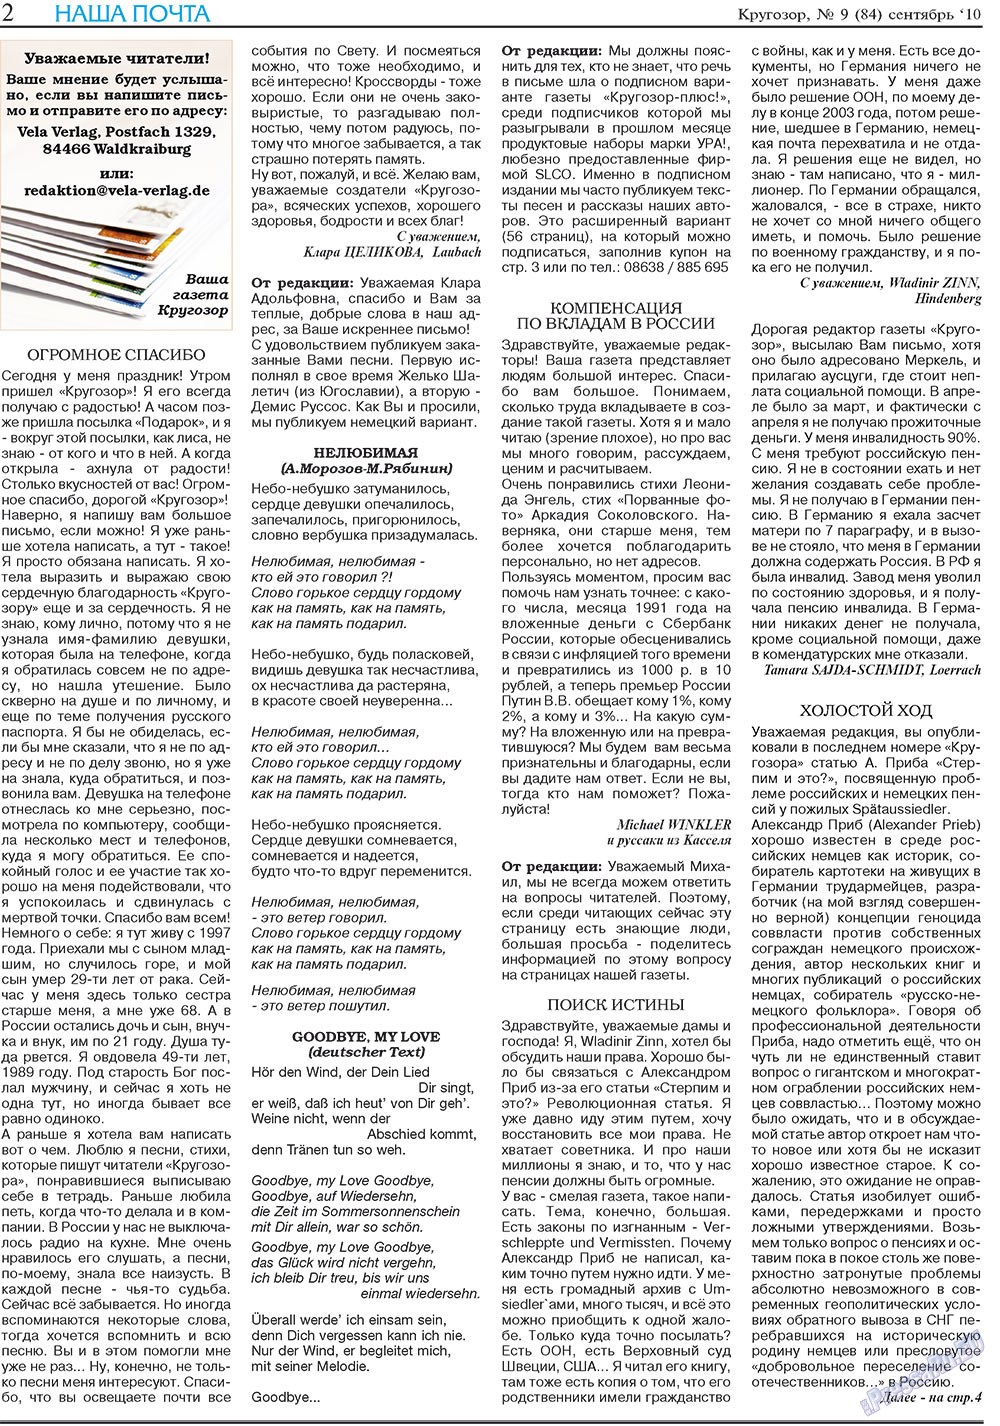 Кругозор плюс!, газета. 2010 №9 стр.2